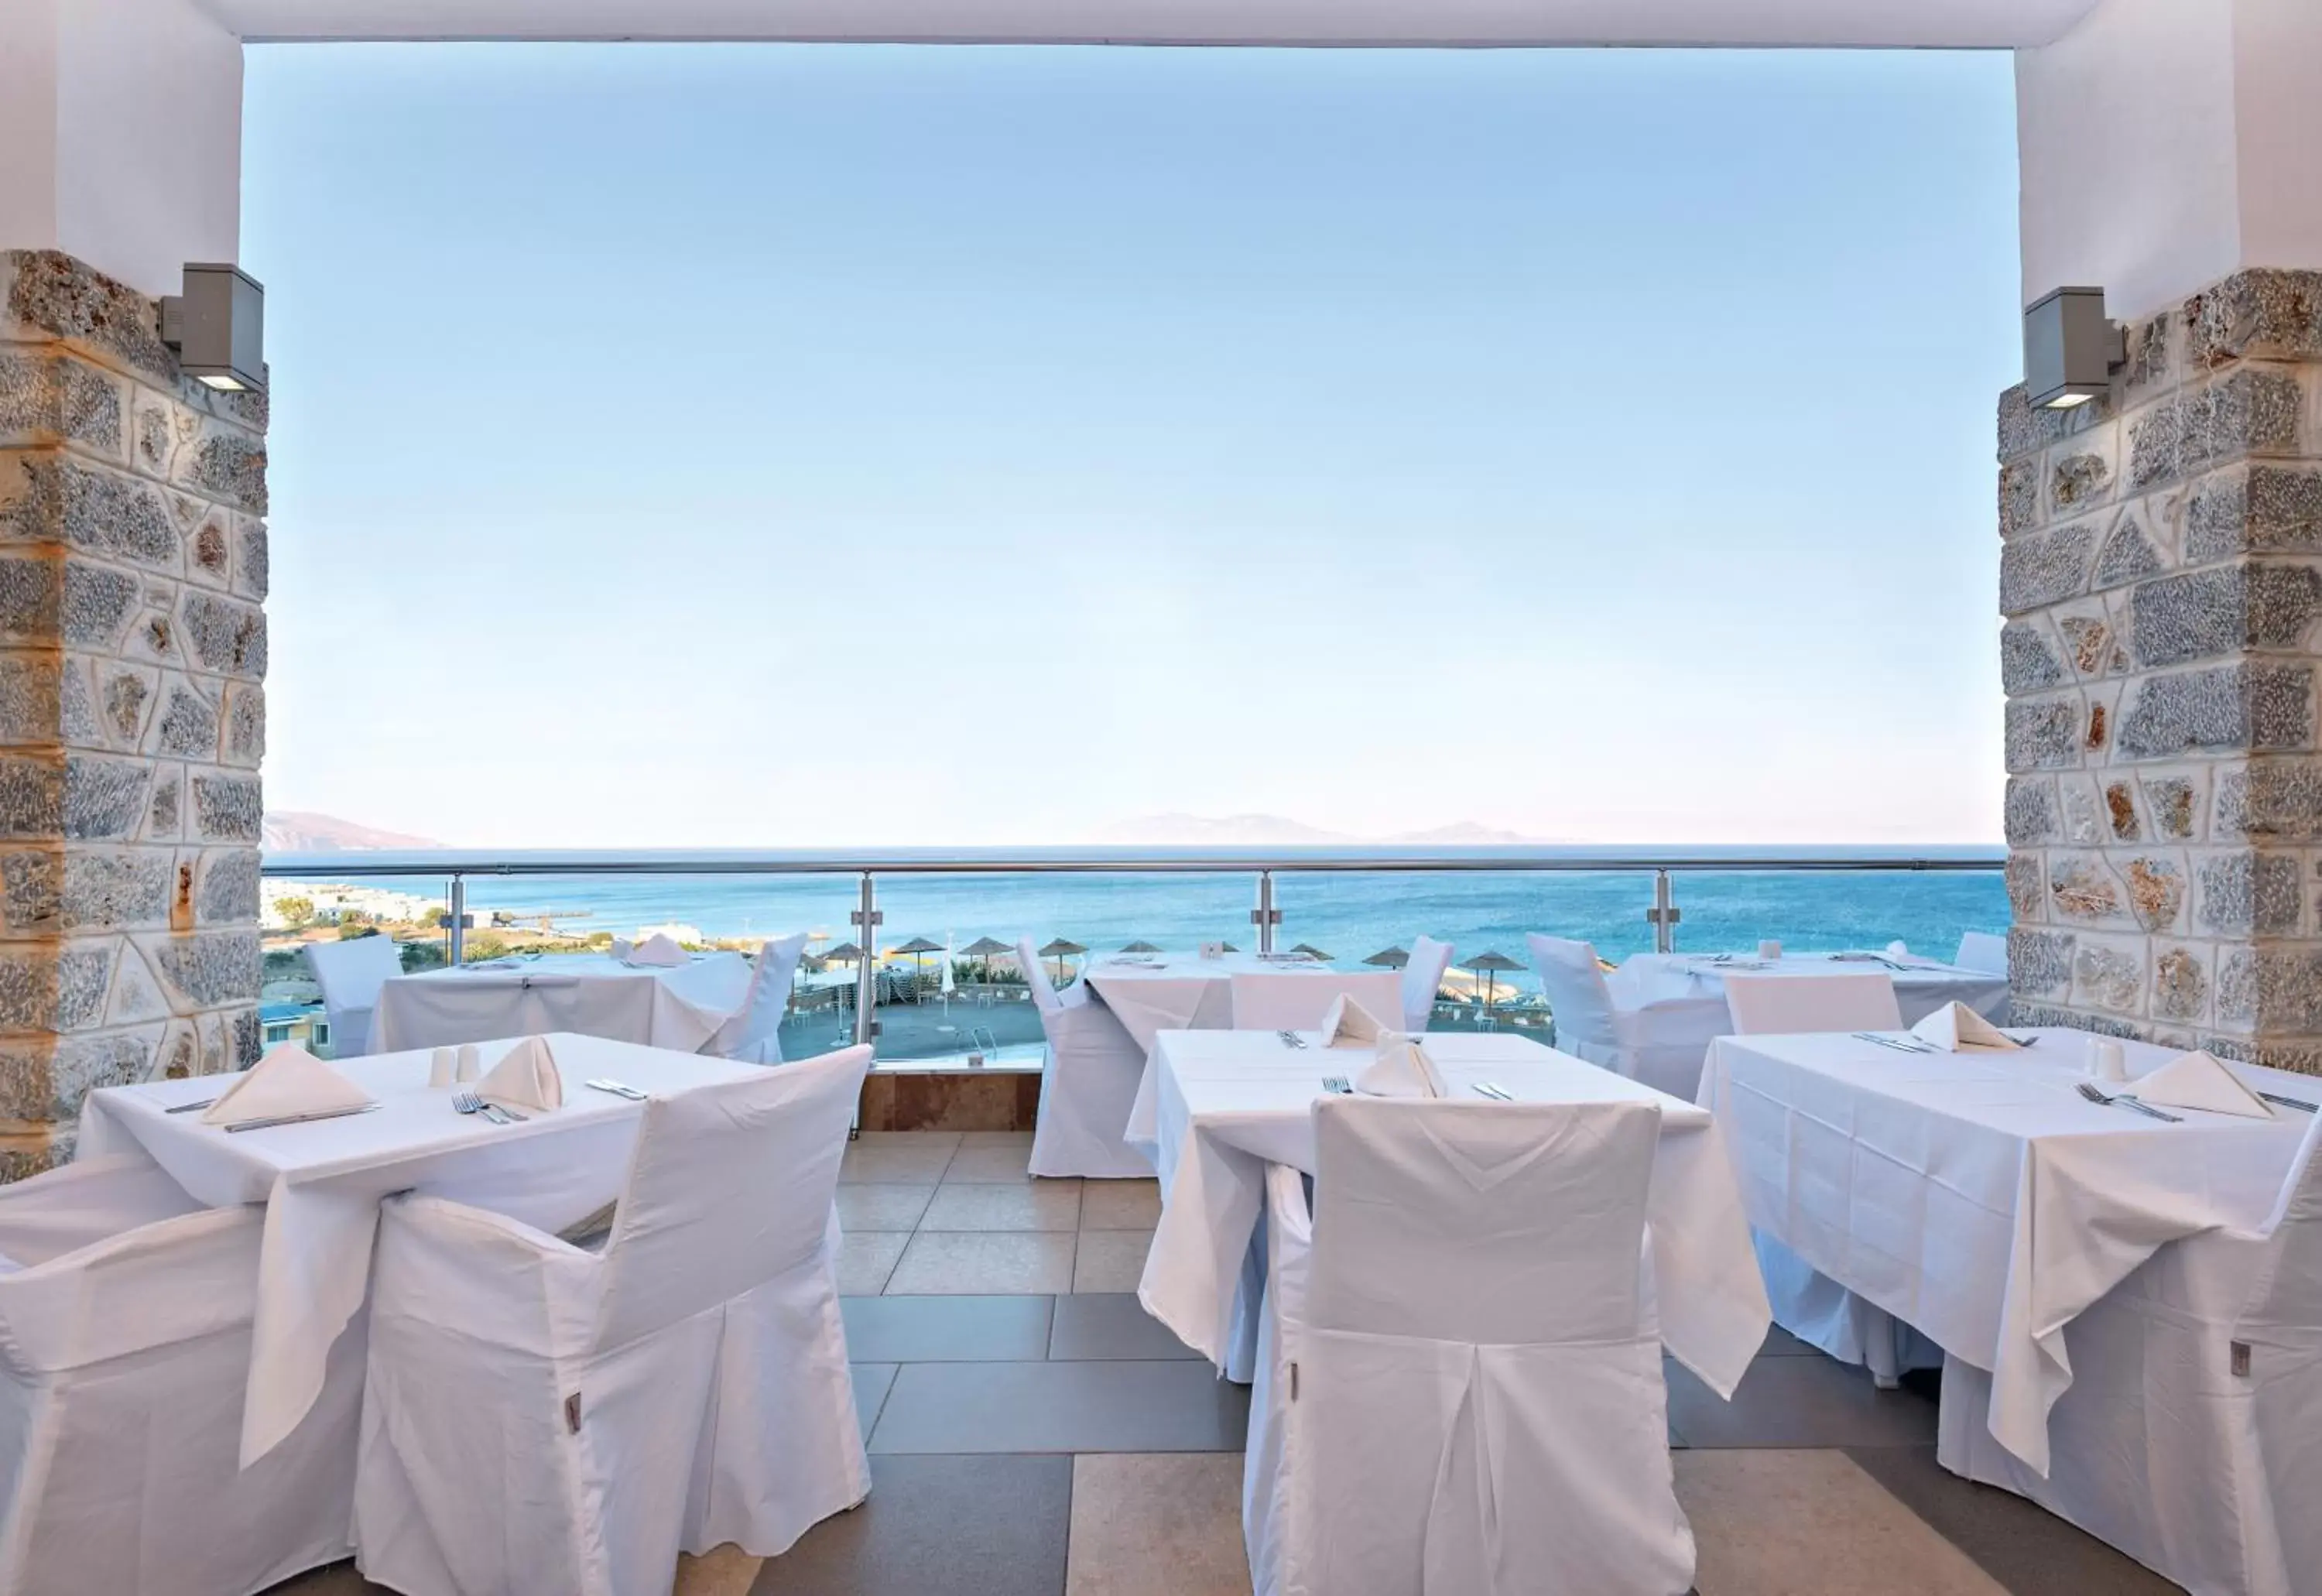 Banquet Facilities in Grand Blue Beach Hotel